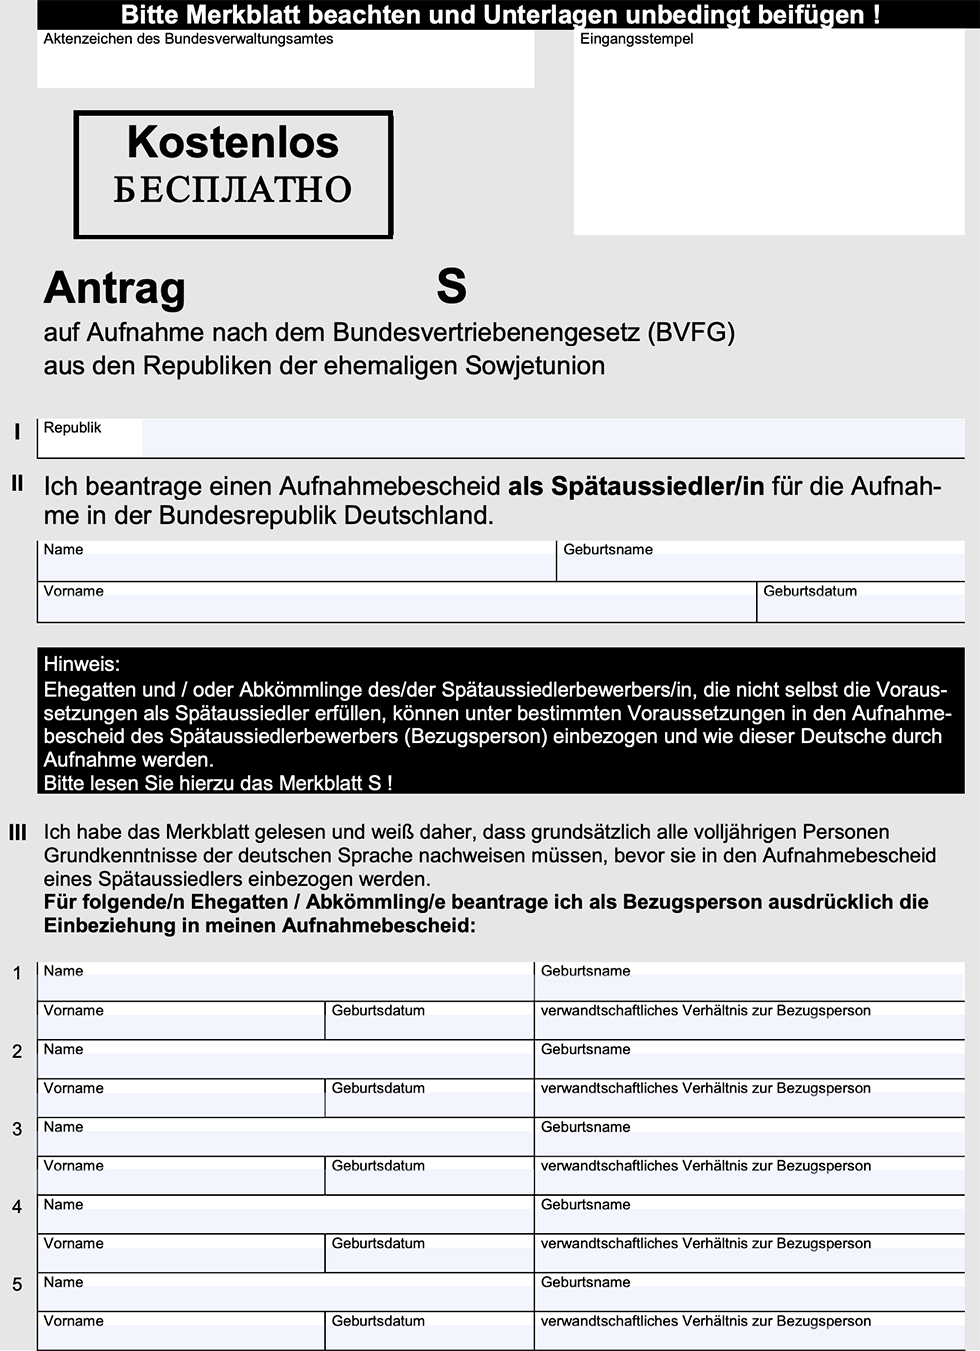 Список документов для поздних переселенцев в германию тальмон